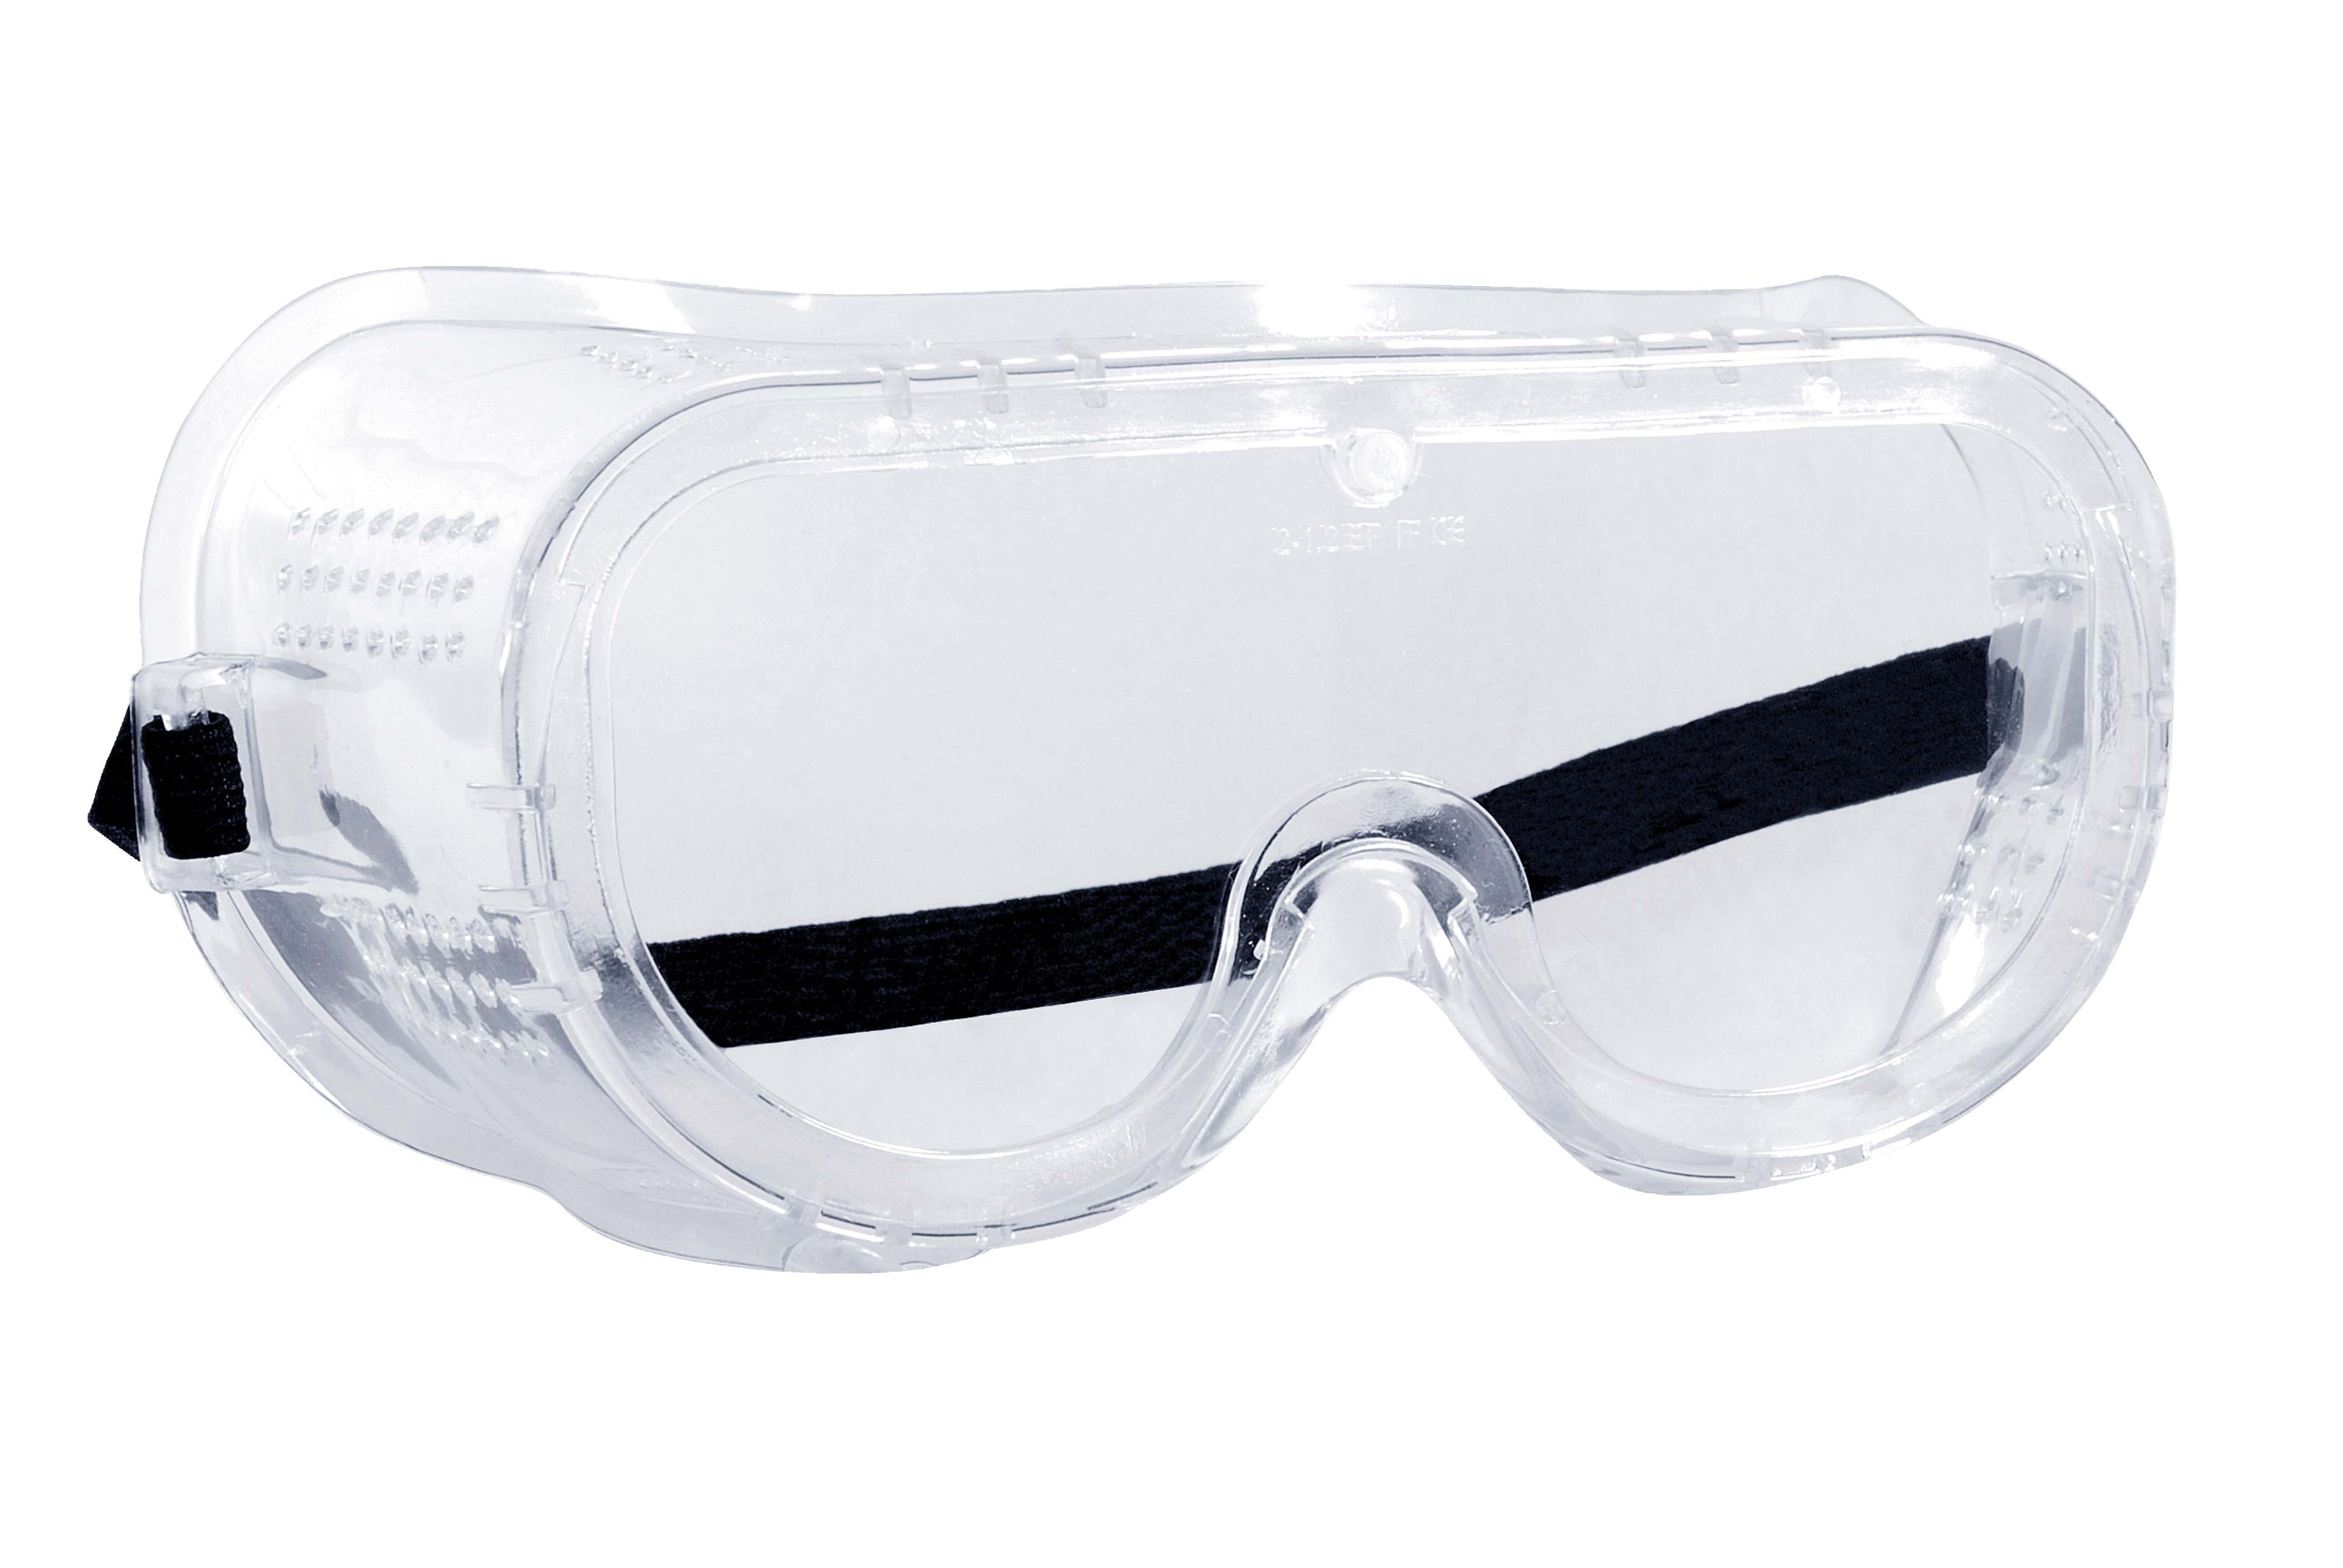 Kit sécurité, masque, filtres et lunette de protection